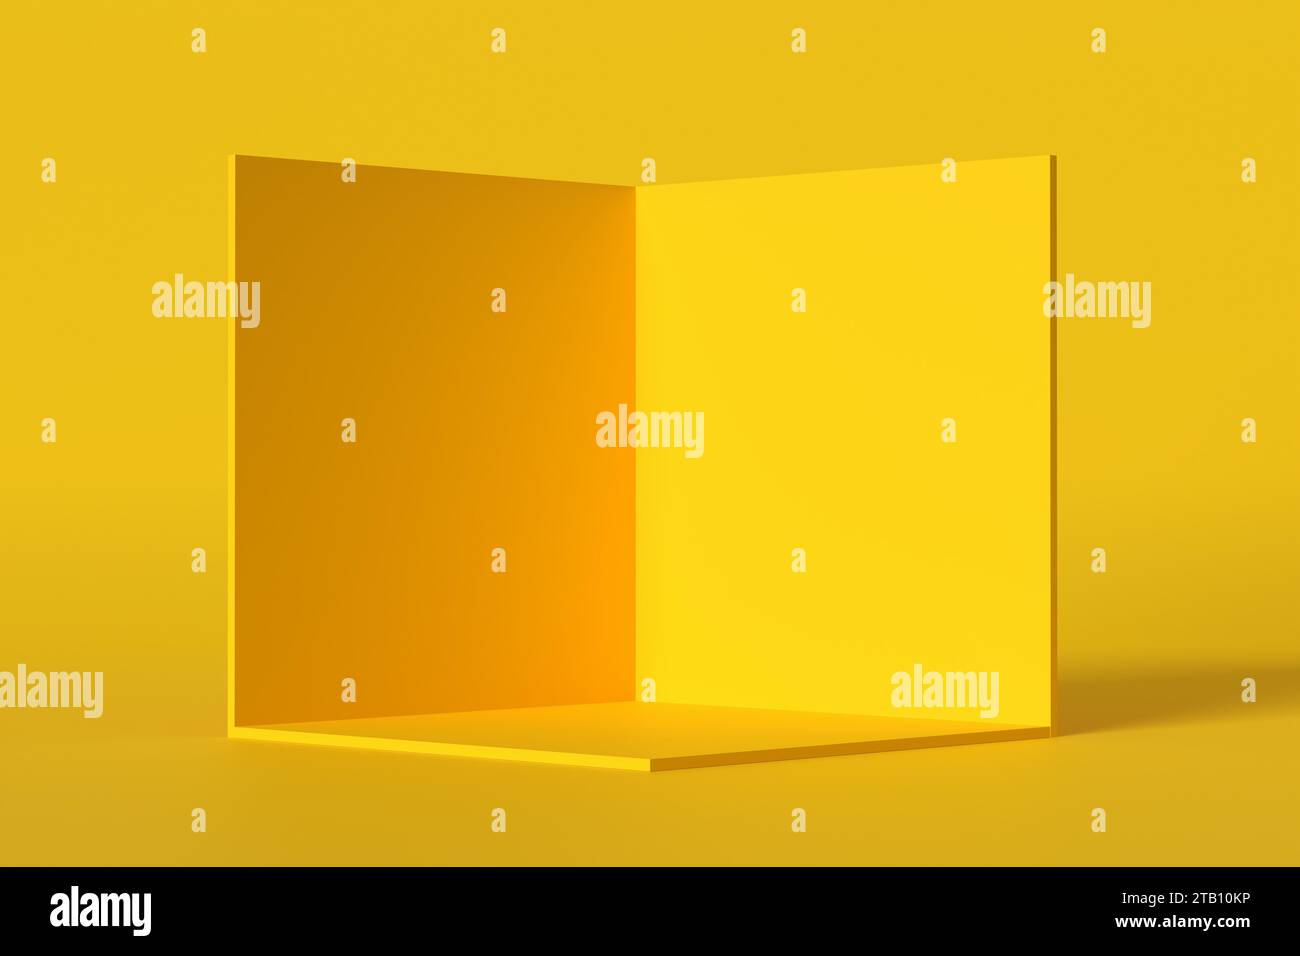 Coupe transversale d'une boîte cubique à l'intérieur de la pièce jaune. Podium géométrique vide ou plate-forme pour l'affichage du produit. Modèle de boîte vierge de rendu 3D. Banque D'Images